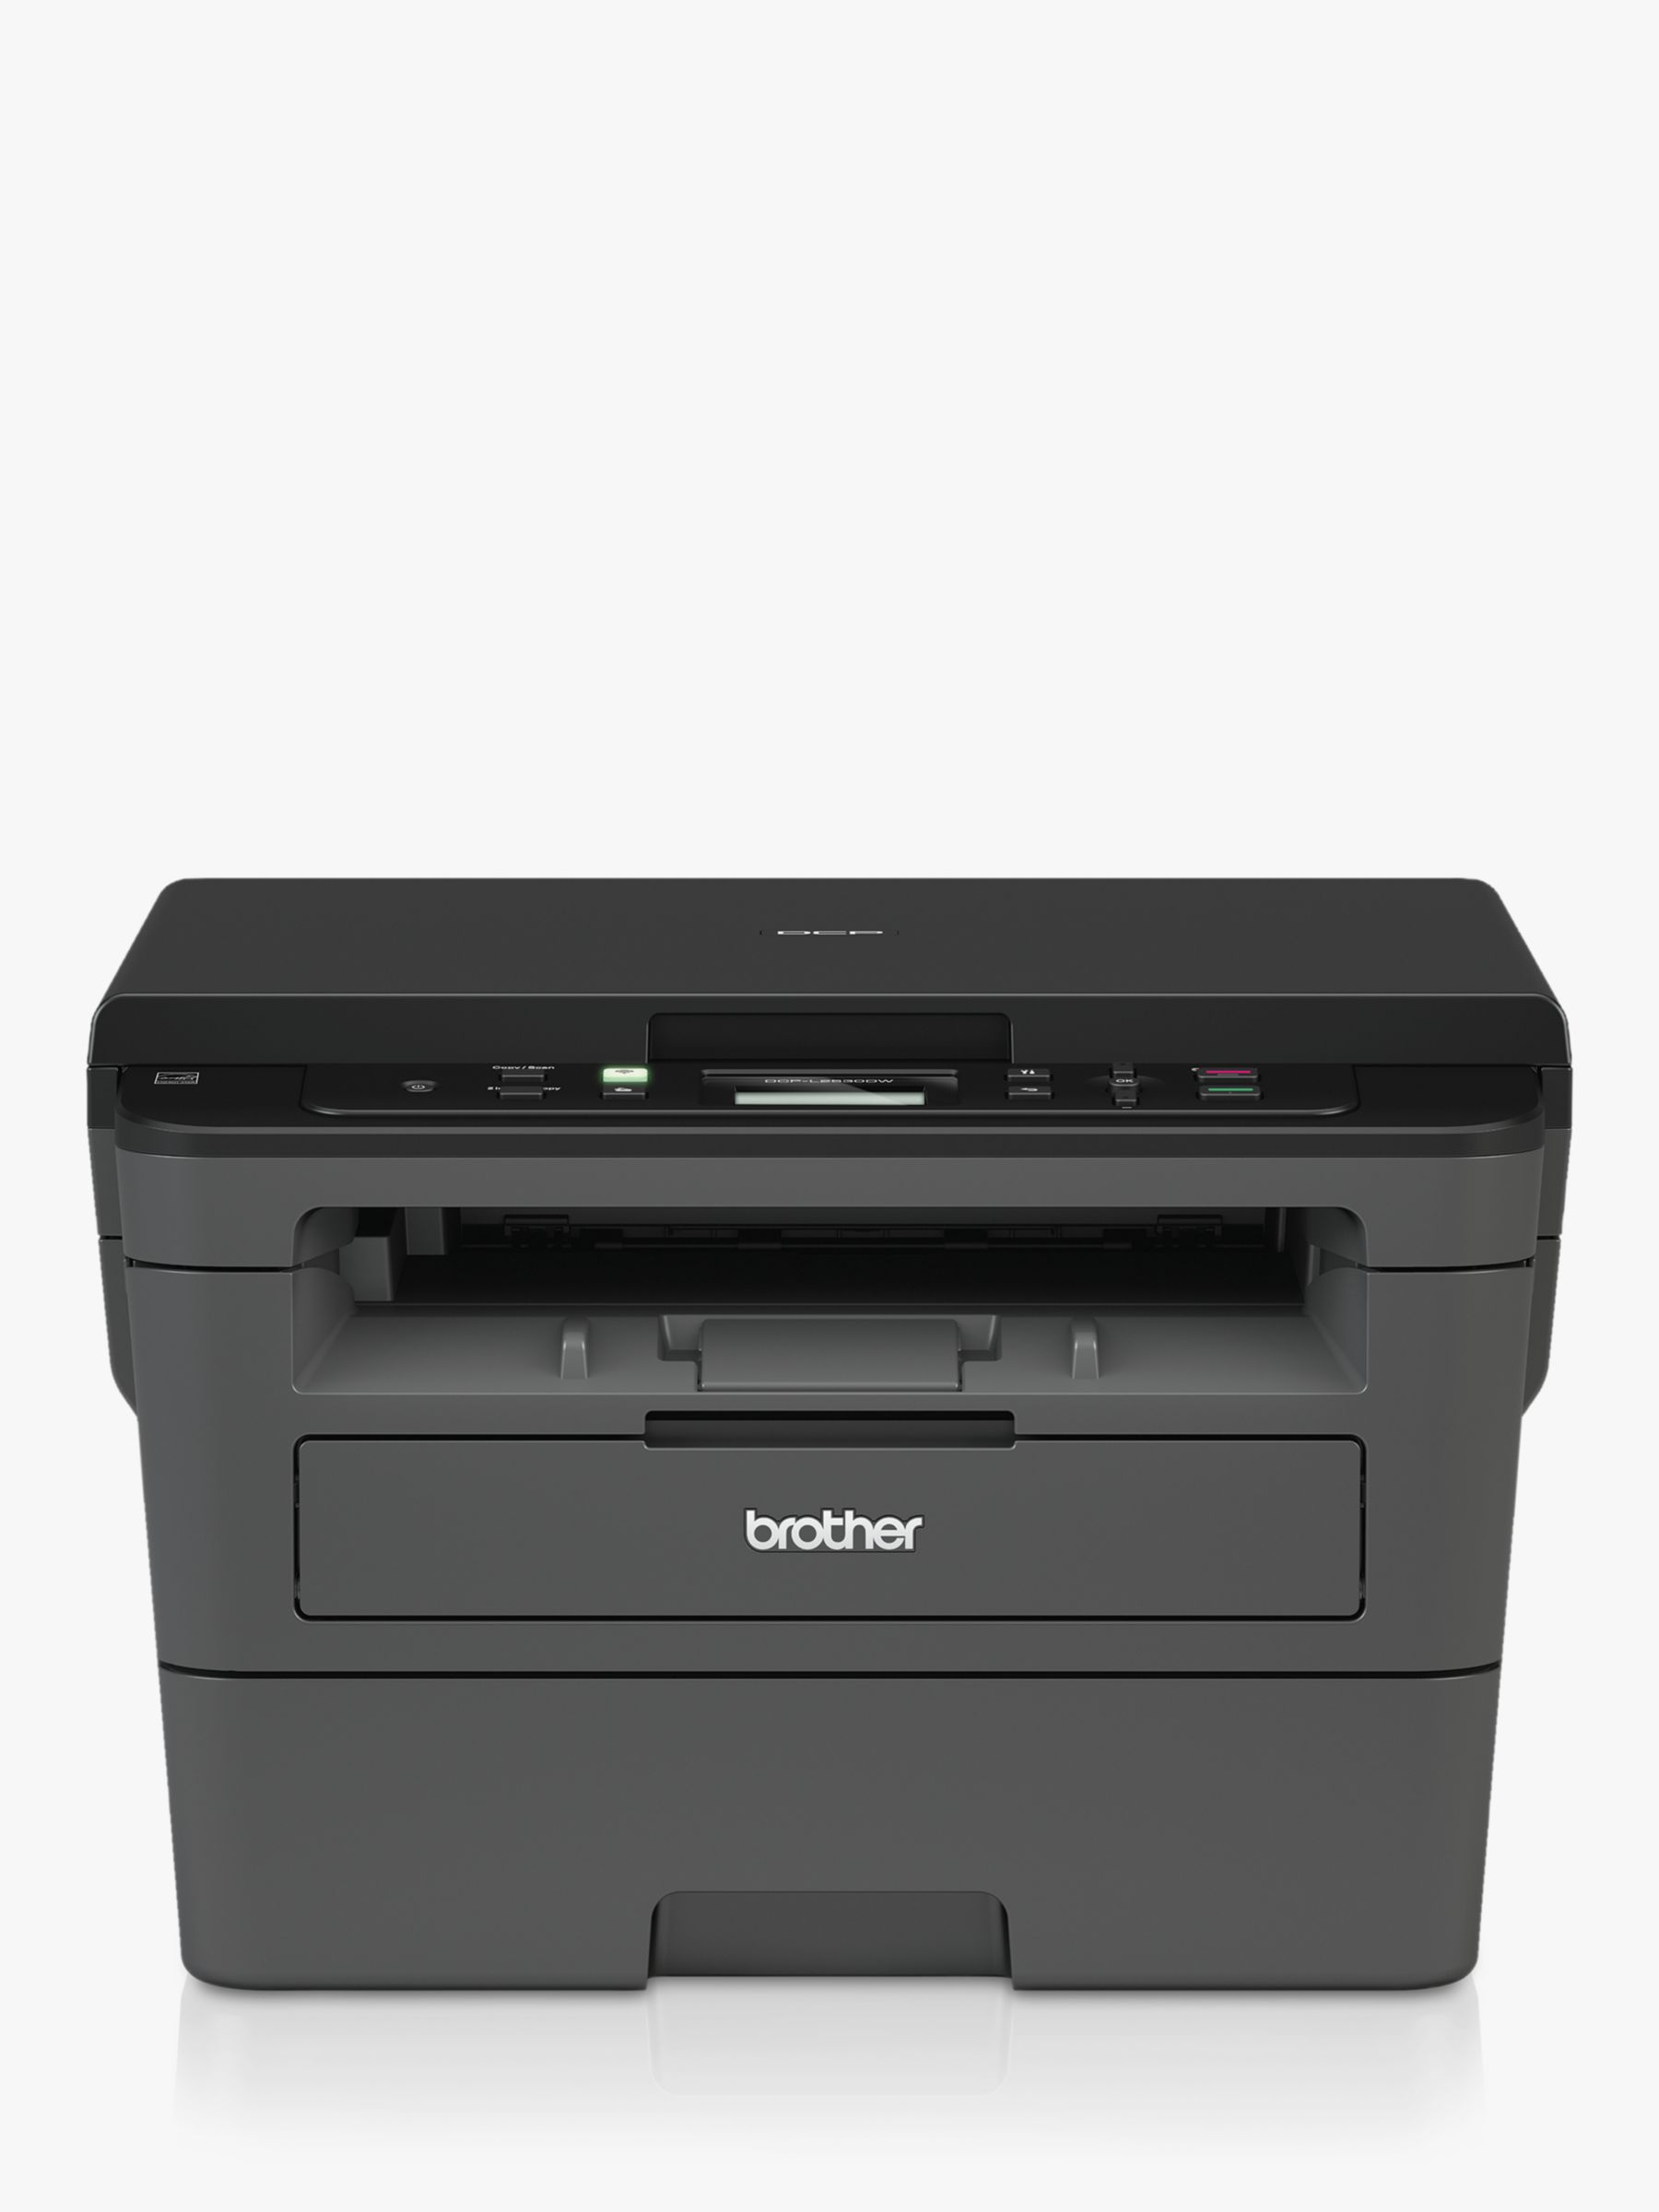 Printers - Scan, Mono Laser